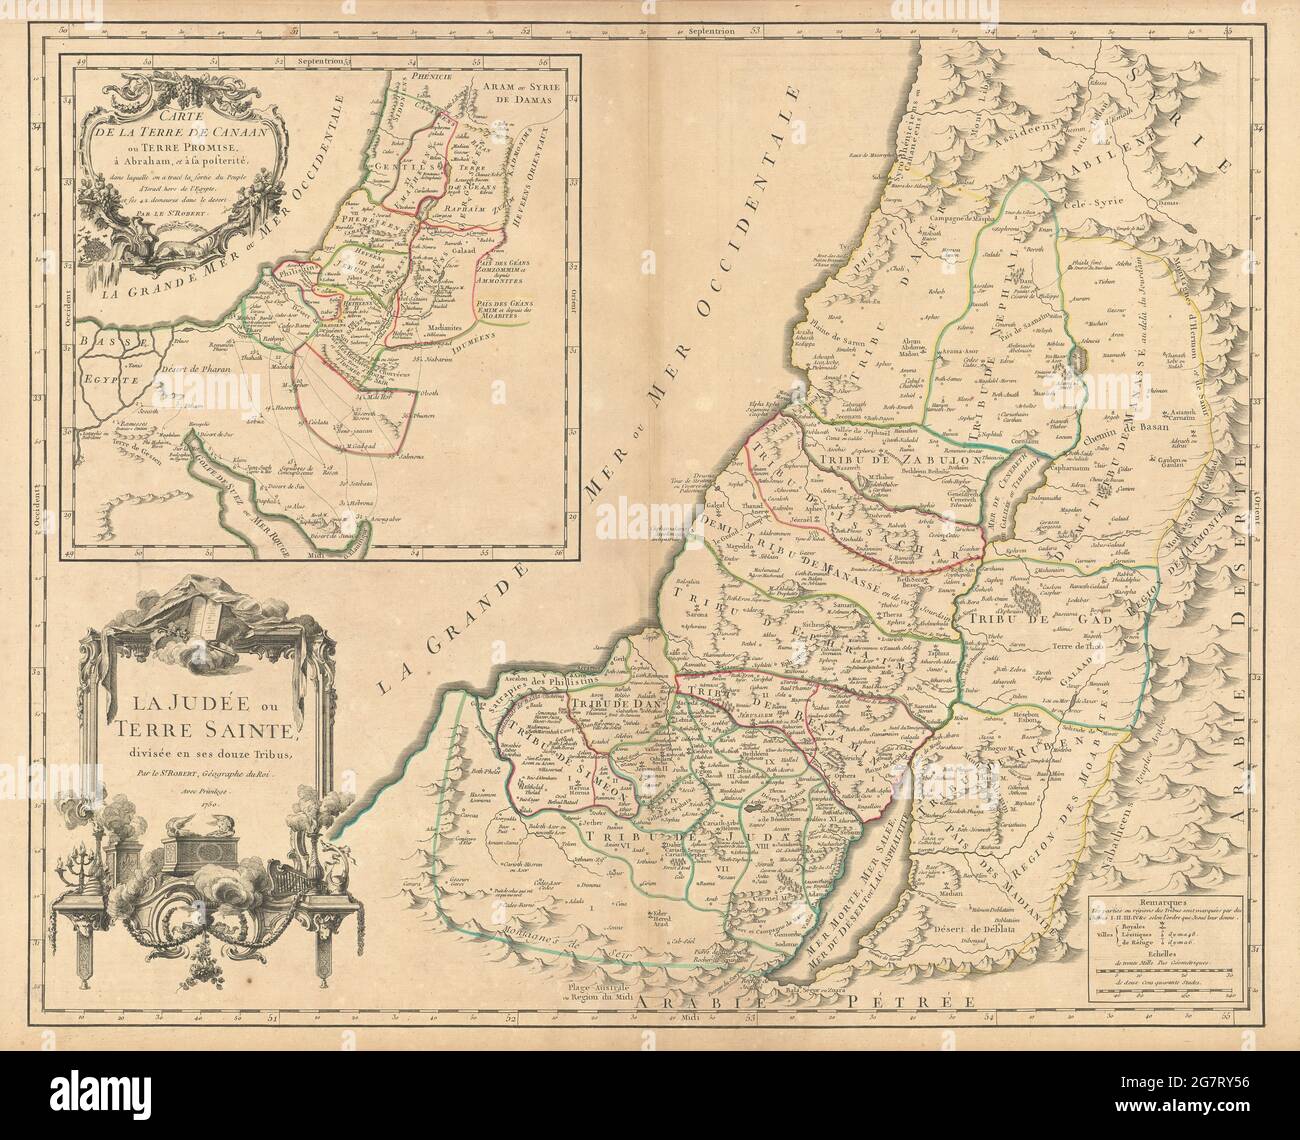 'La Judée ou Terre Sainte divisée en ses douze tribus' Israel. VAUGONDY 1750 map Stock Photo